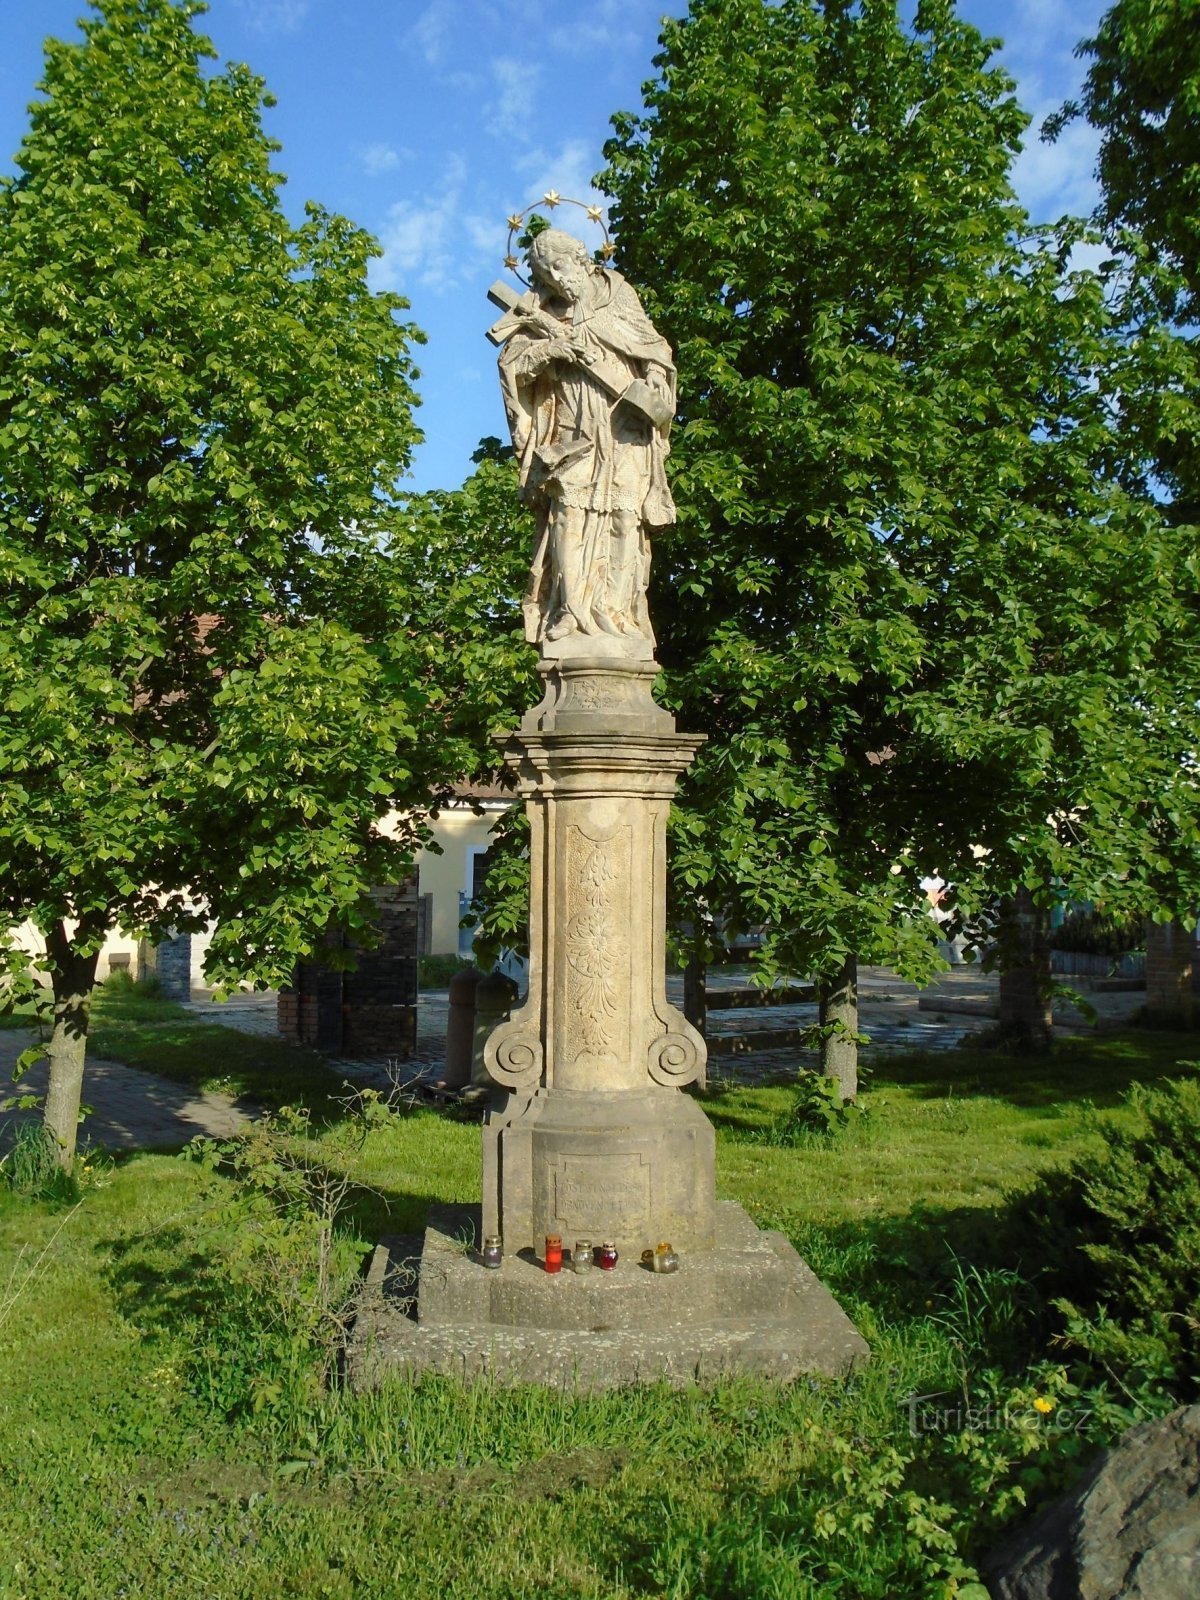 Statue af St. Johannes af Nepomuck i Správčice (Hradec Králové, 1.5.2018. maj XNUMX)